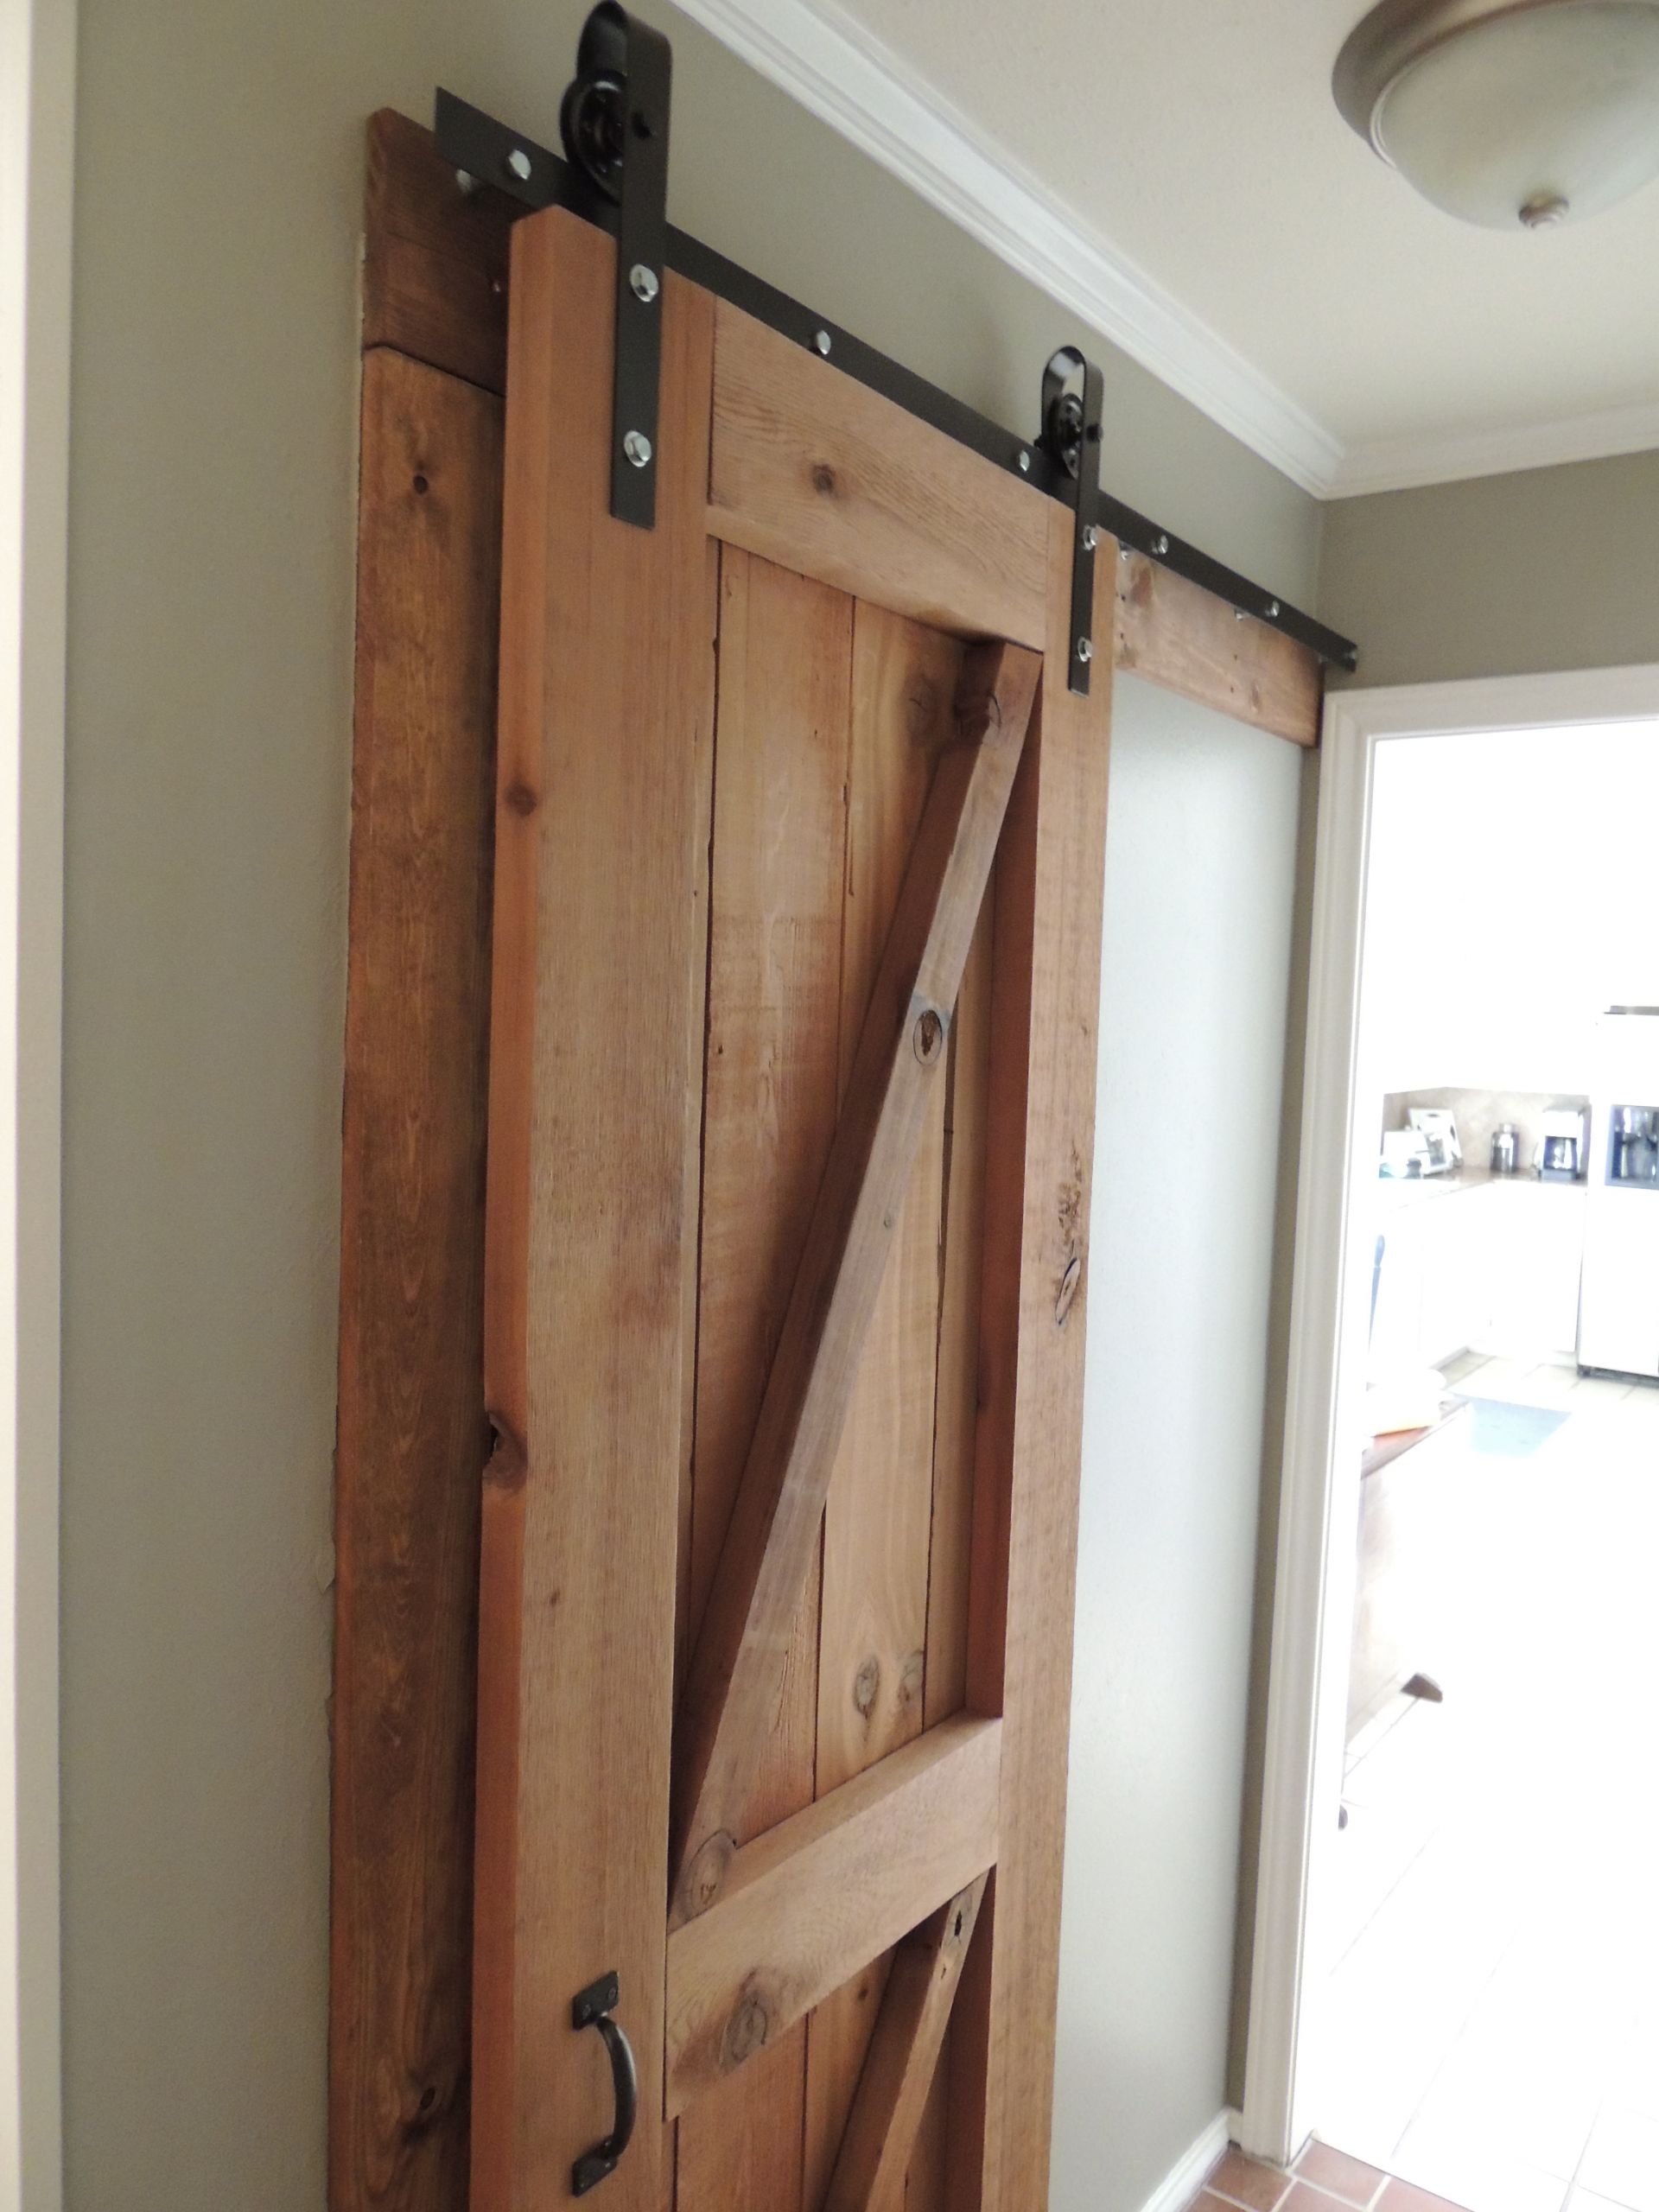 DIY Barn Door Plans
 Let Us Show You the Door Hardware